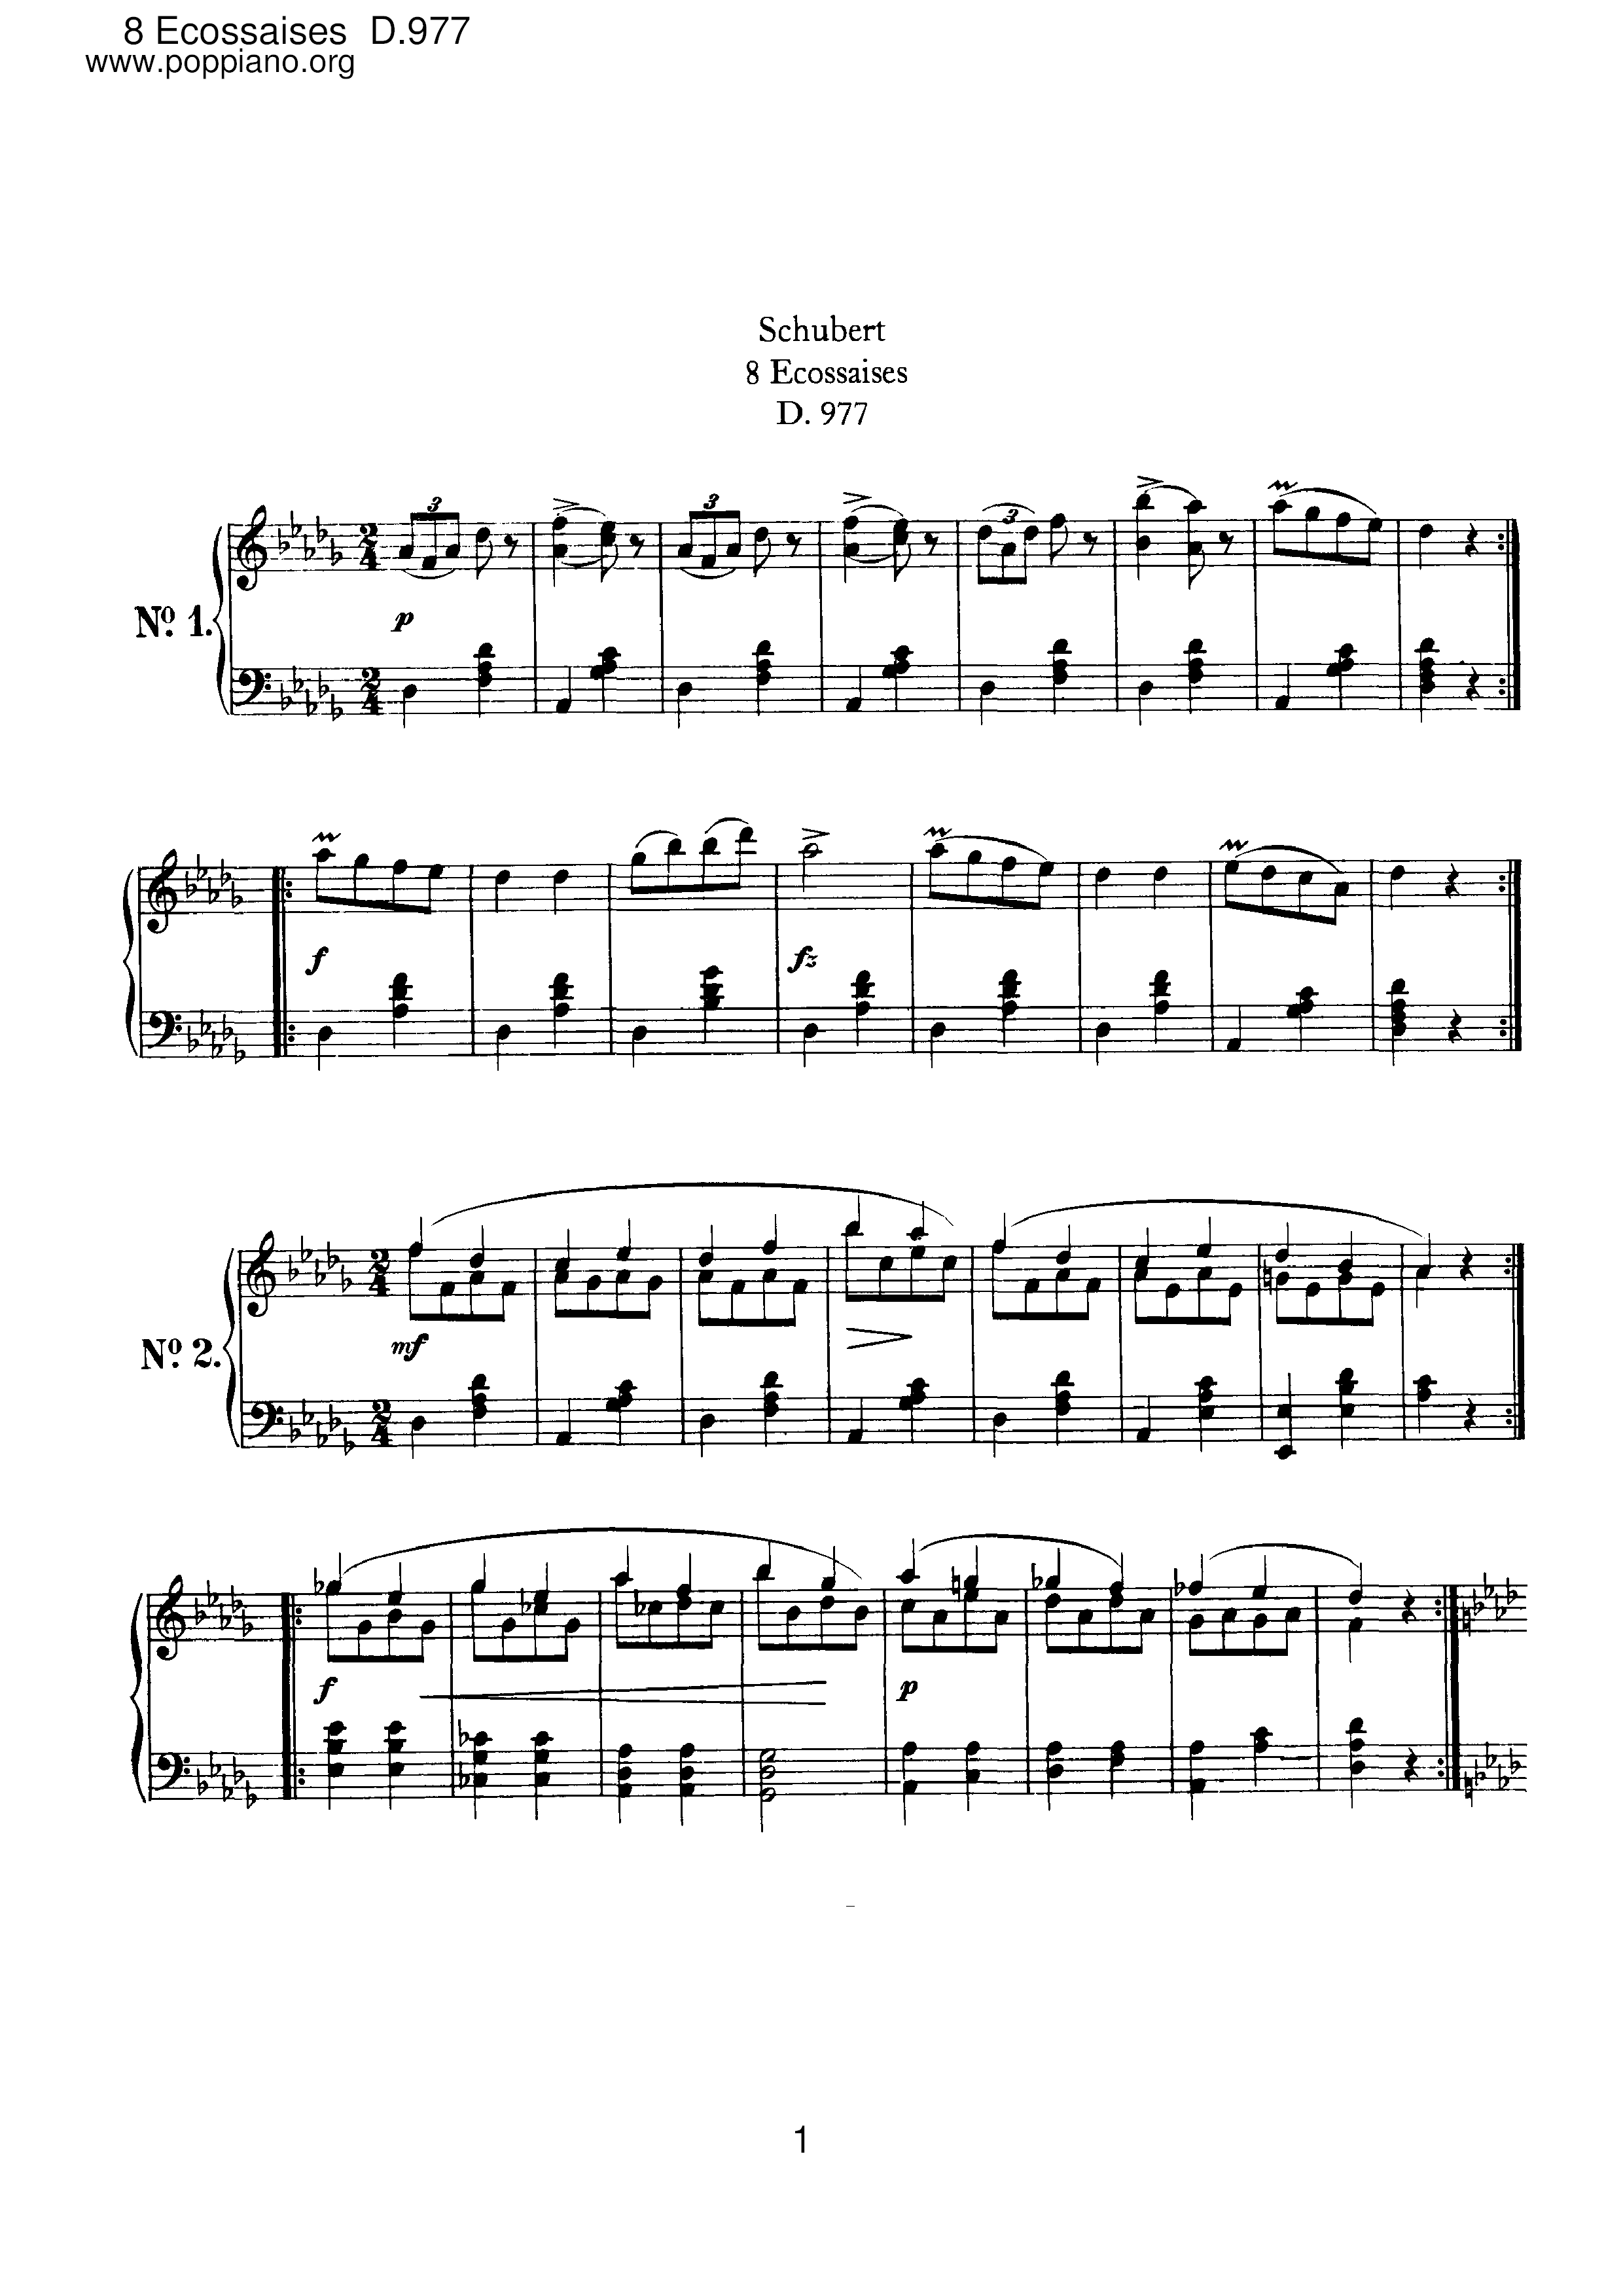 8 Ecossaises, D.977 Score